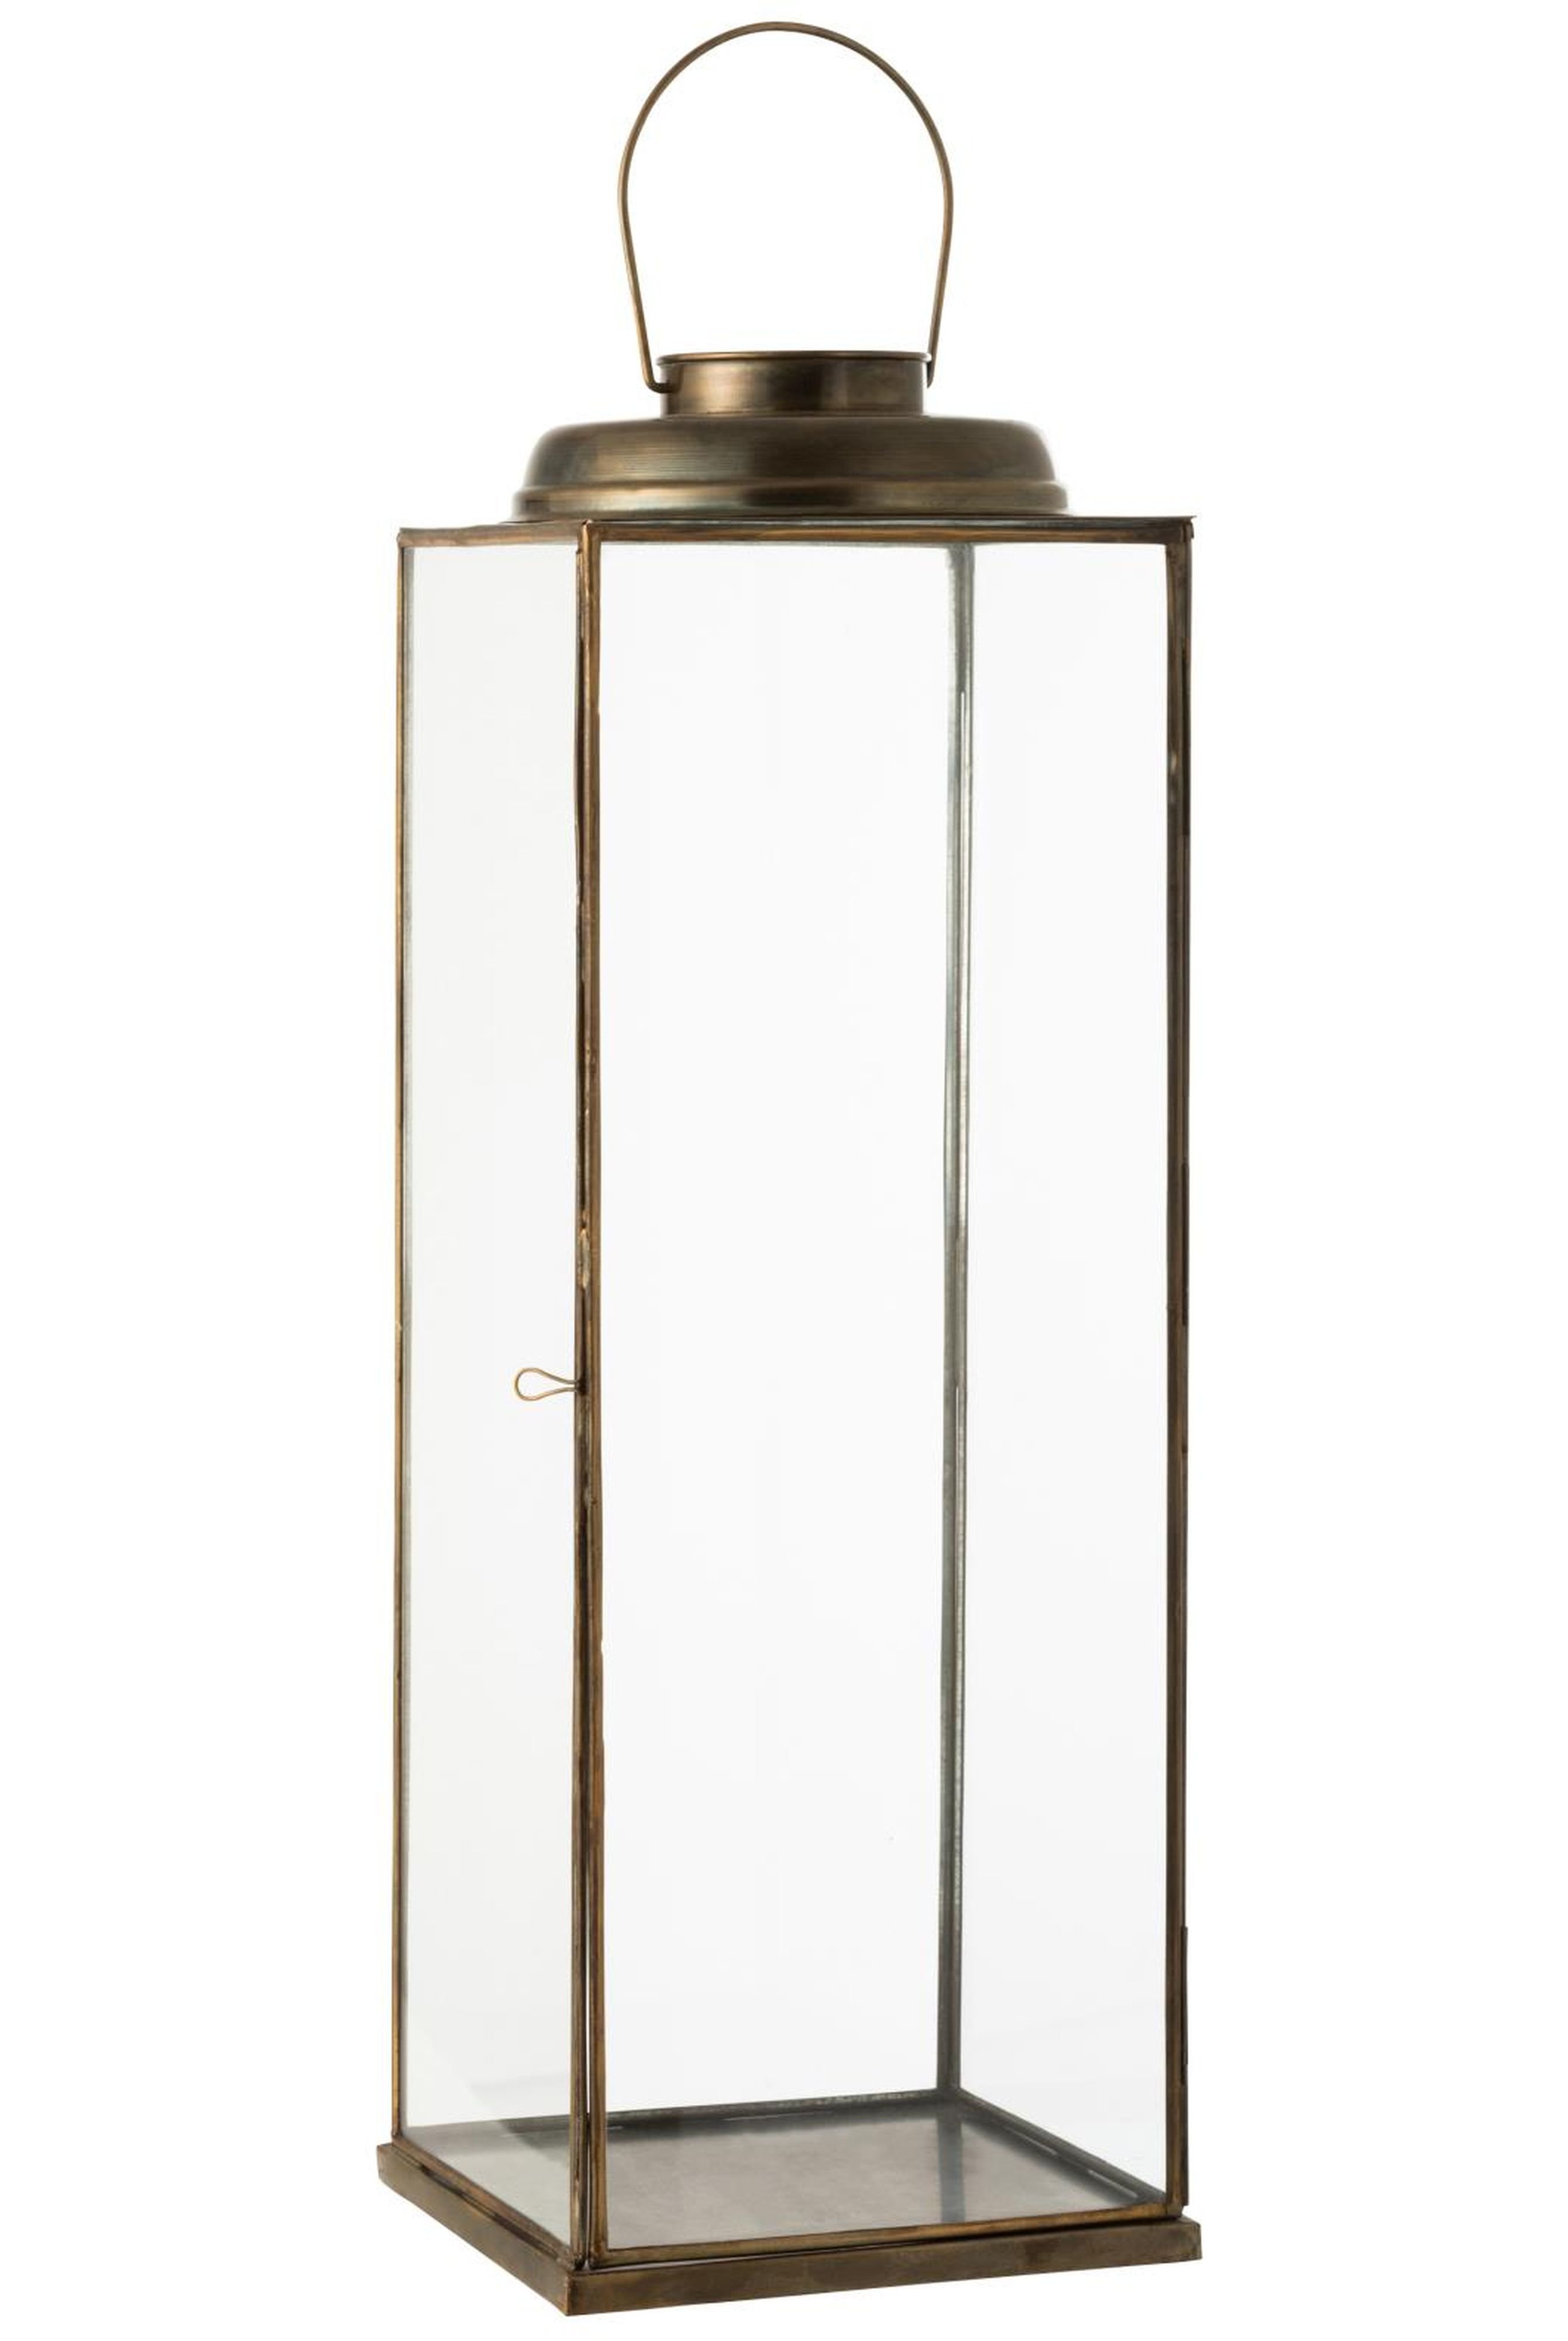 Firkantet lanterne i bronze farve - 70 cm